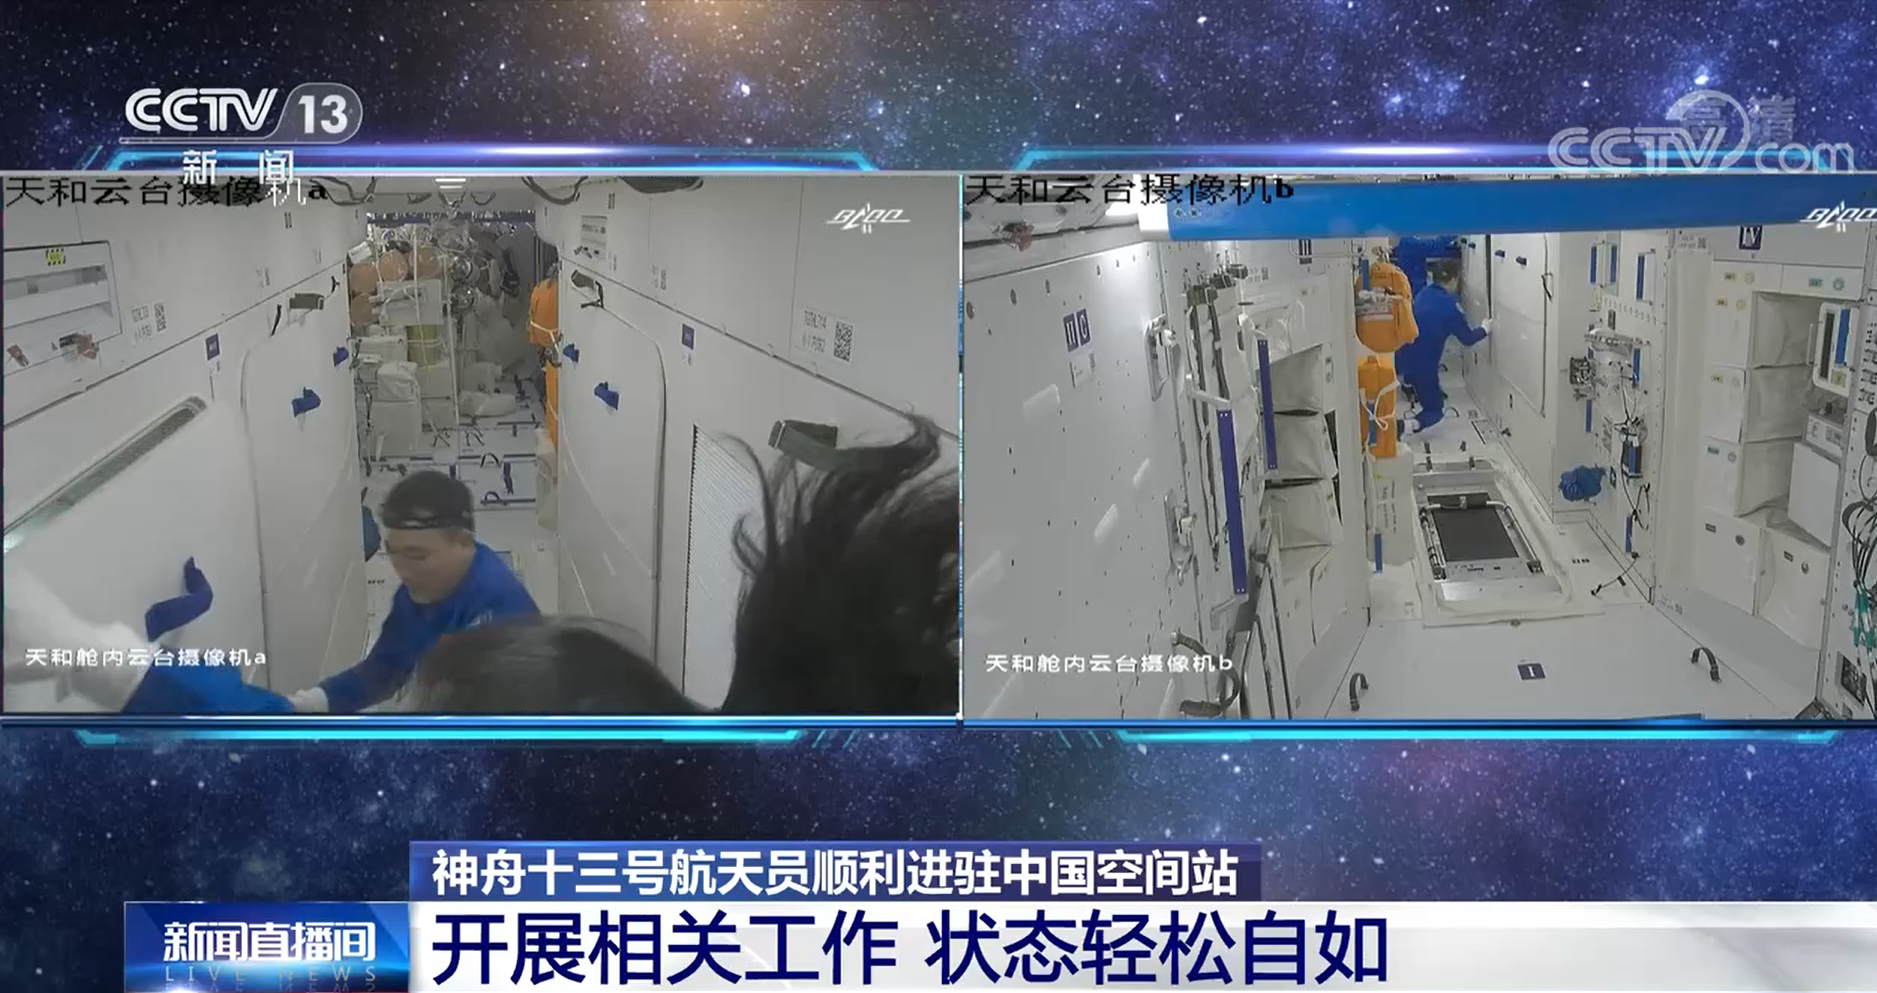 【神舟十三号航天员顺利进驻中国空间站】相关工作陆续开展 状态轻松自如